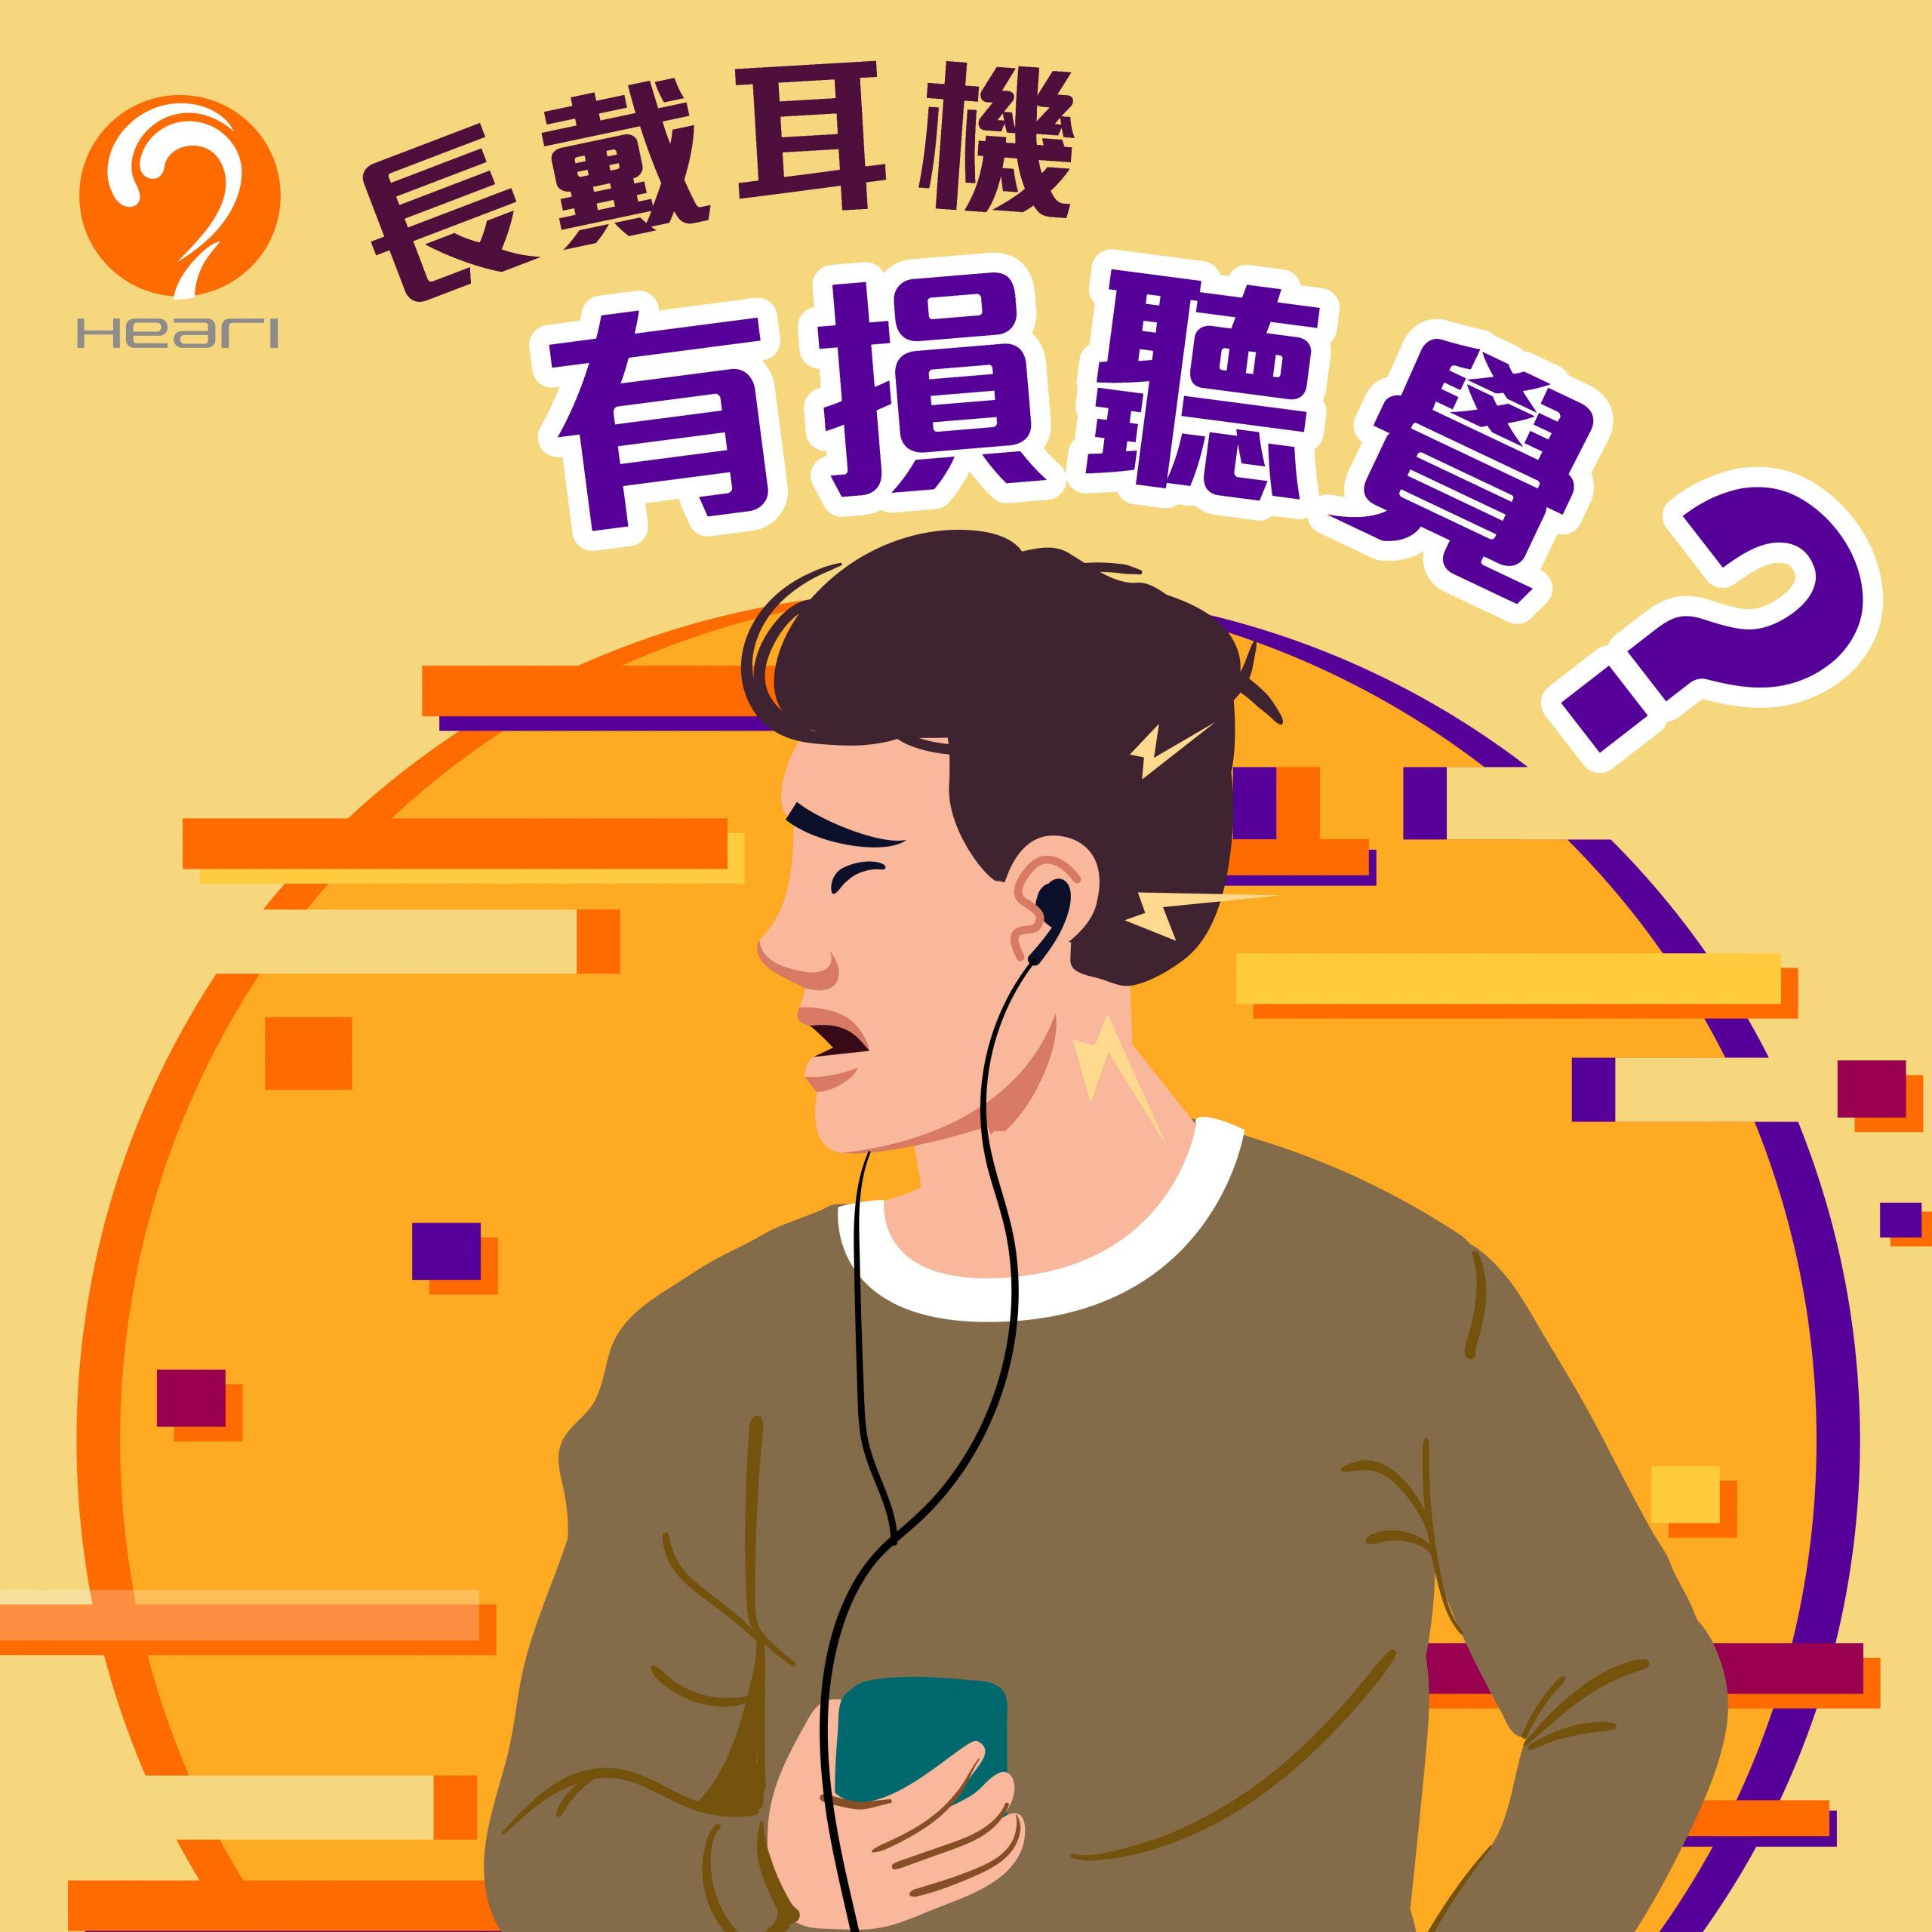 什么听歌习惯会损害到听力呢？